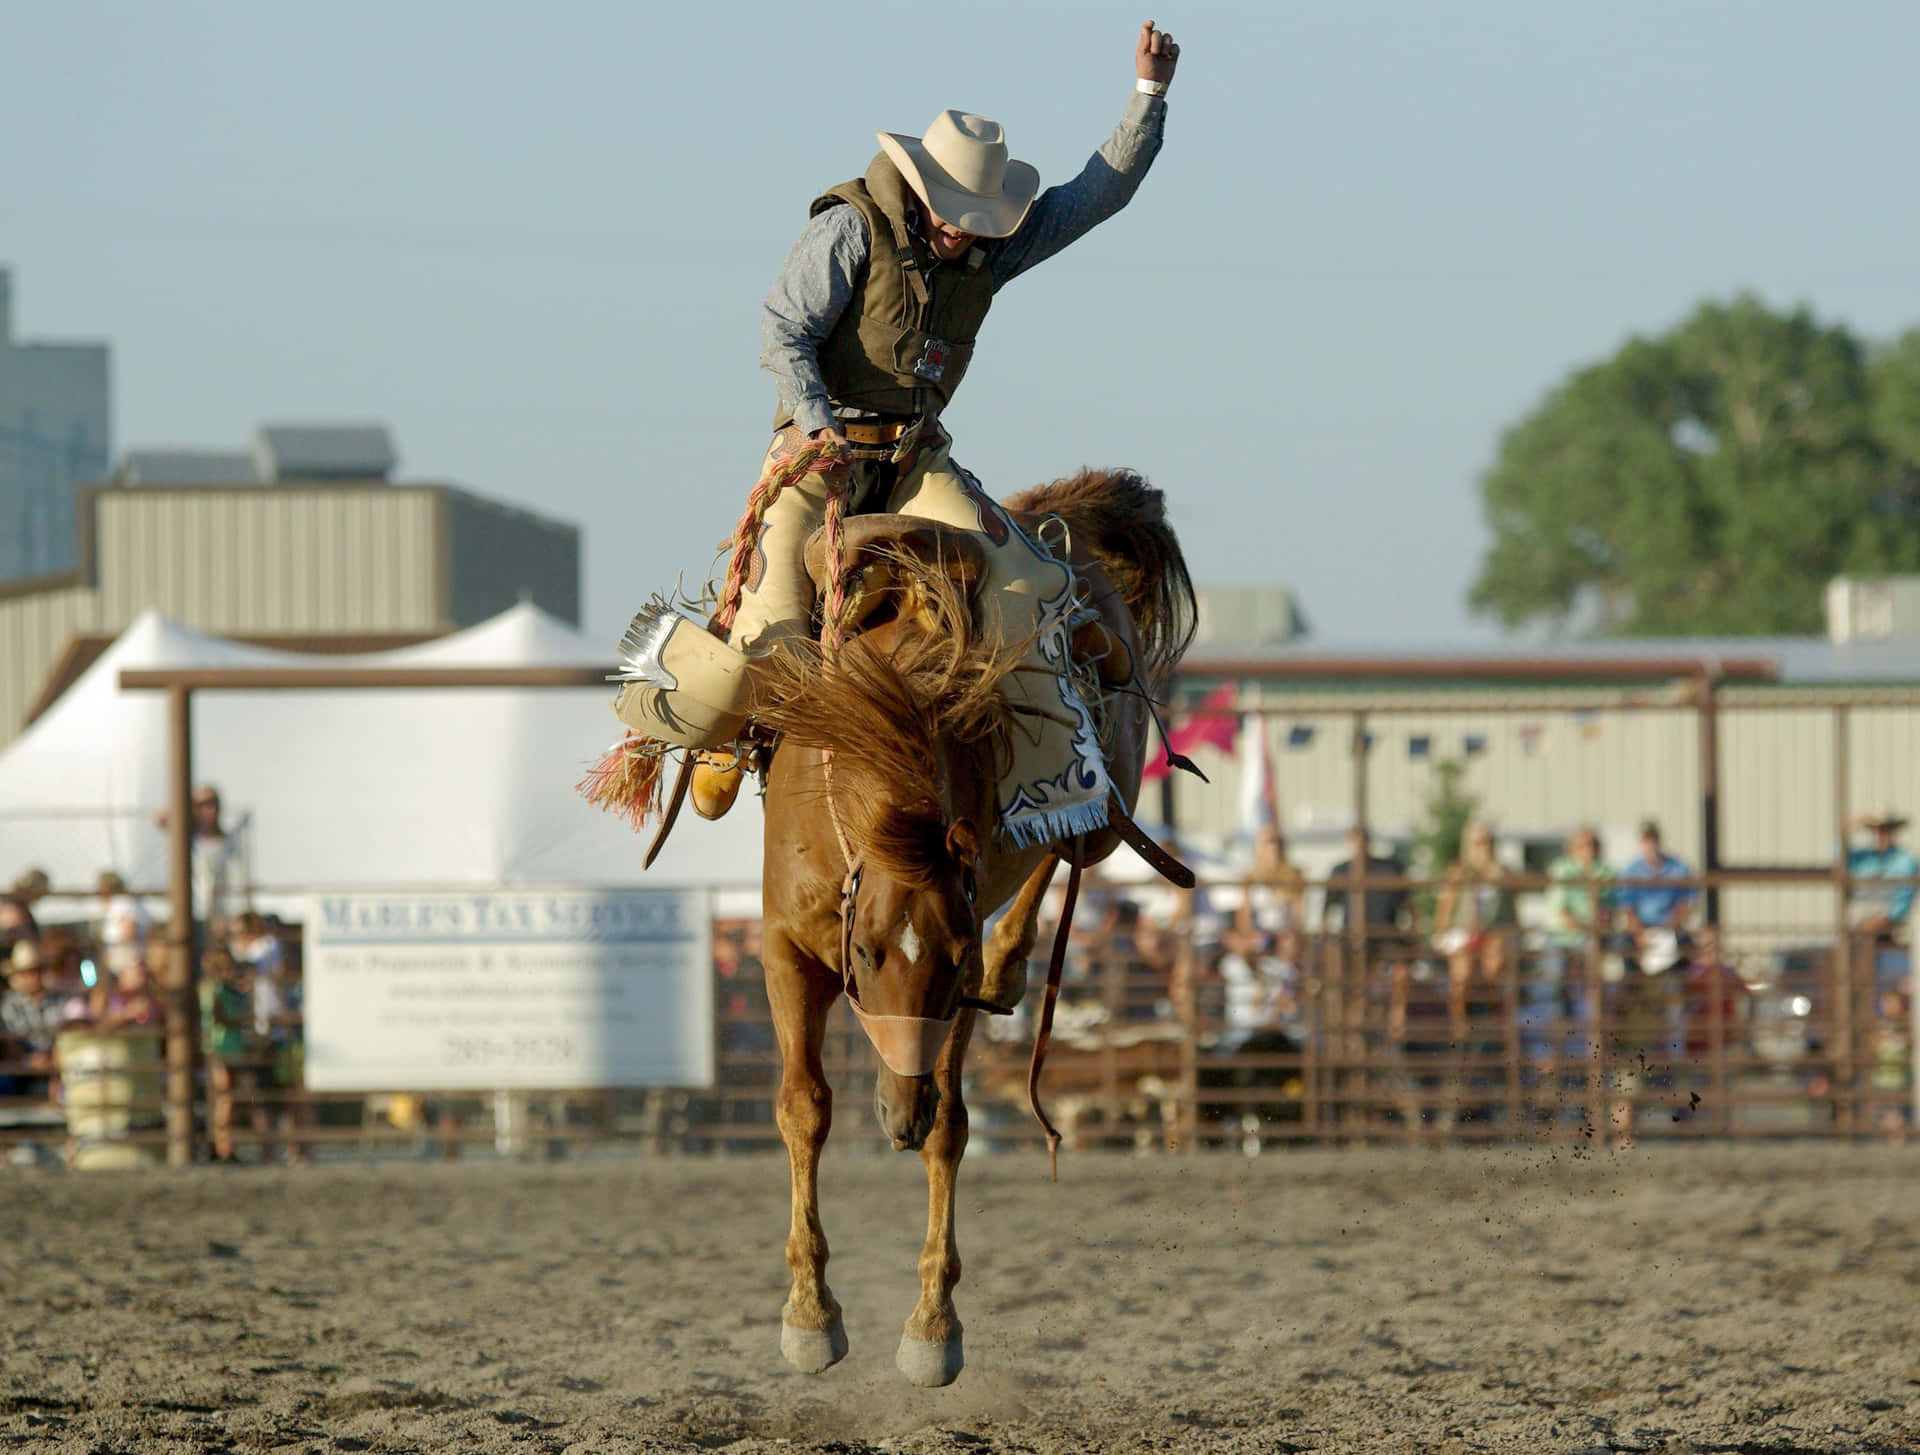 Rodeocowboy Reitet Auf Einem Wild Buckelnden Bronco-pferd. Wallpaper